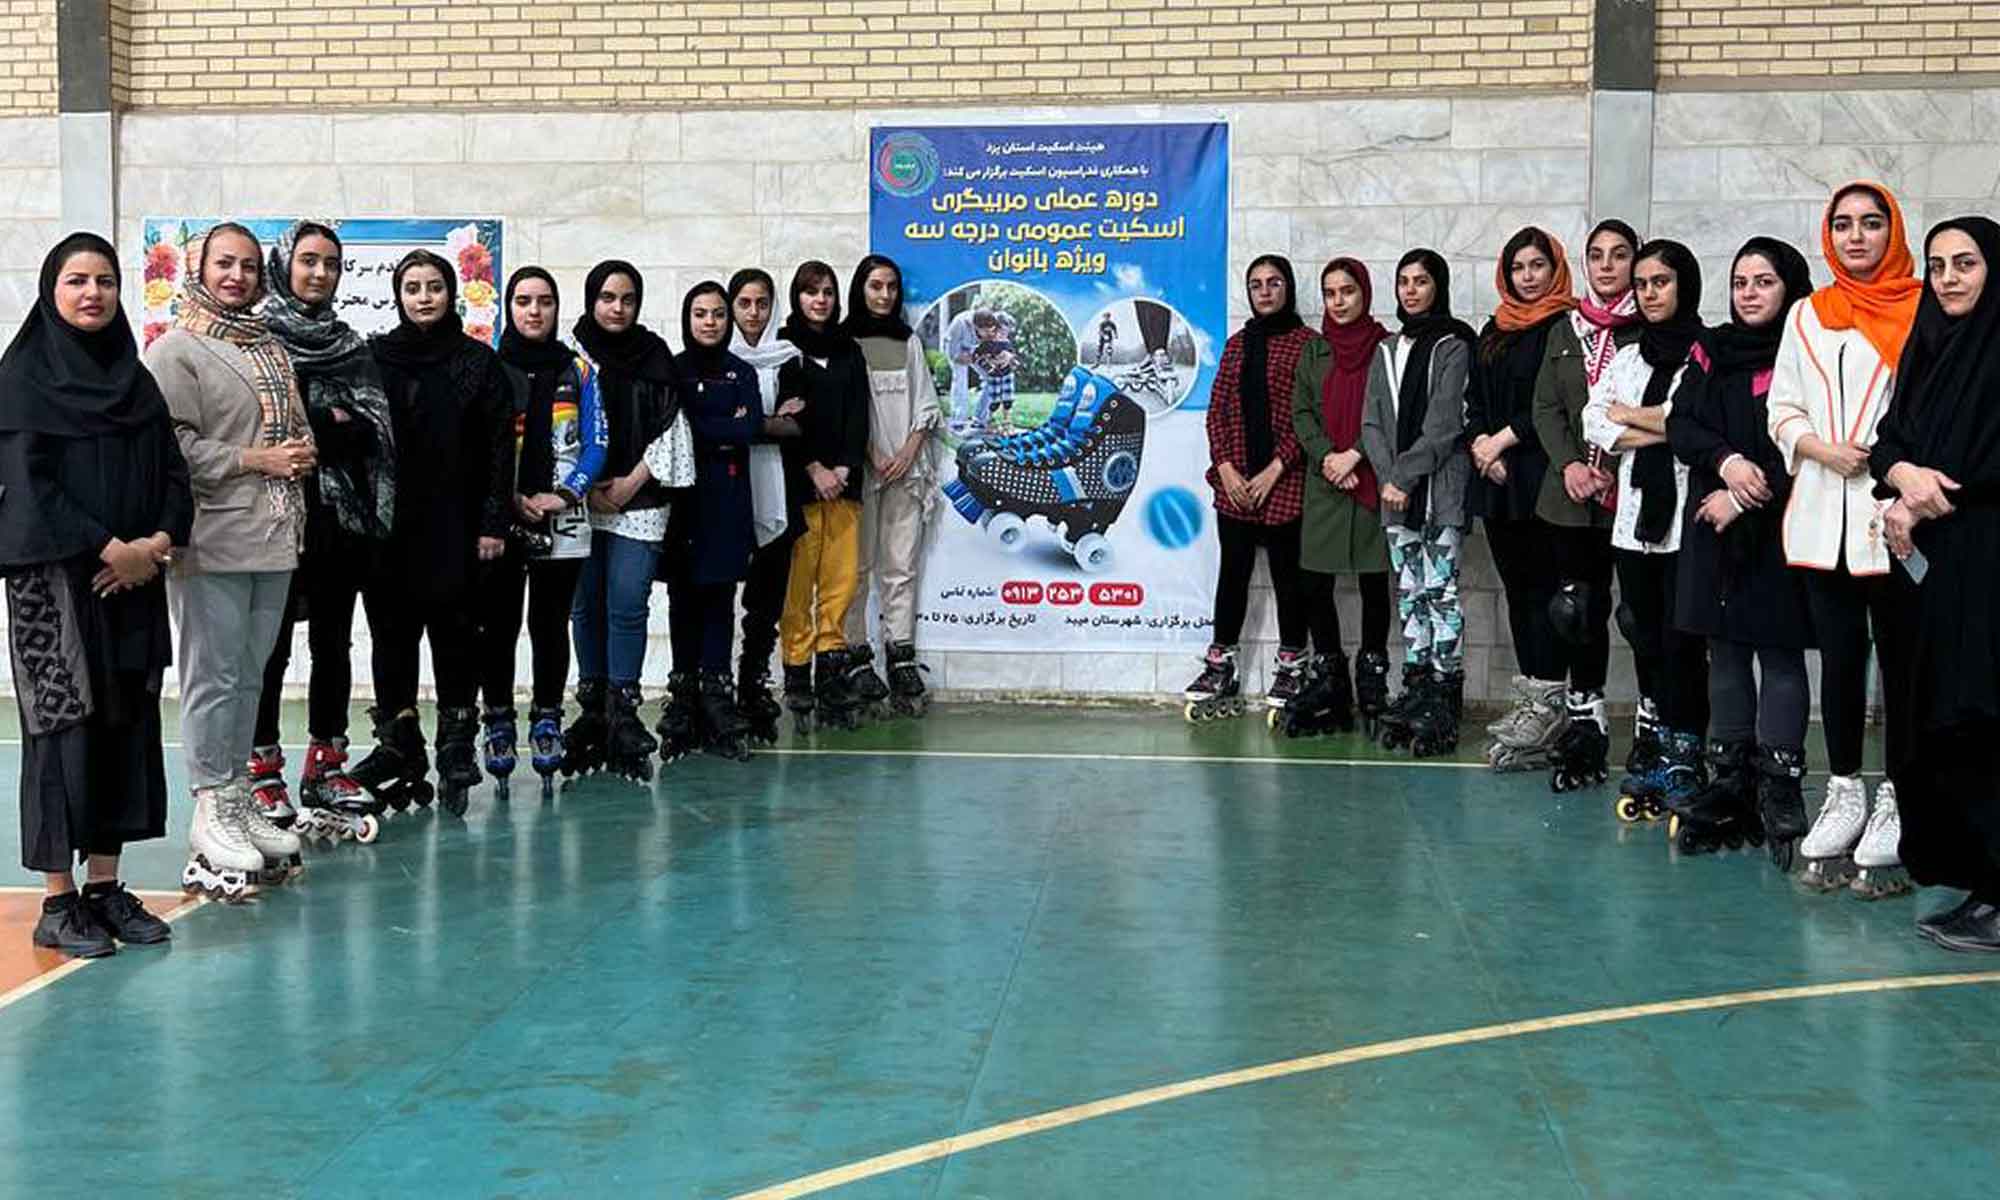 دوره عملی مربیگری درجه 3 رولر اسکیت عمومی در استان یزد برگزارشد.